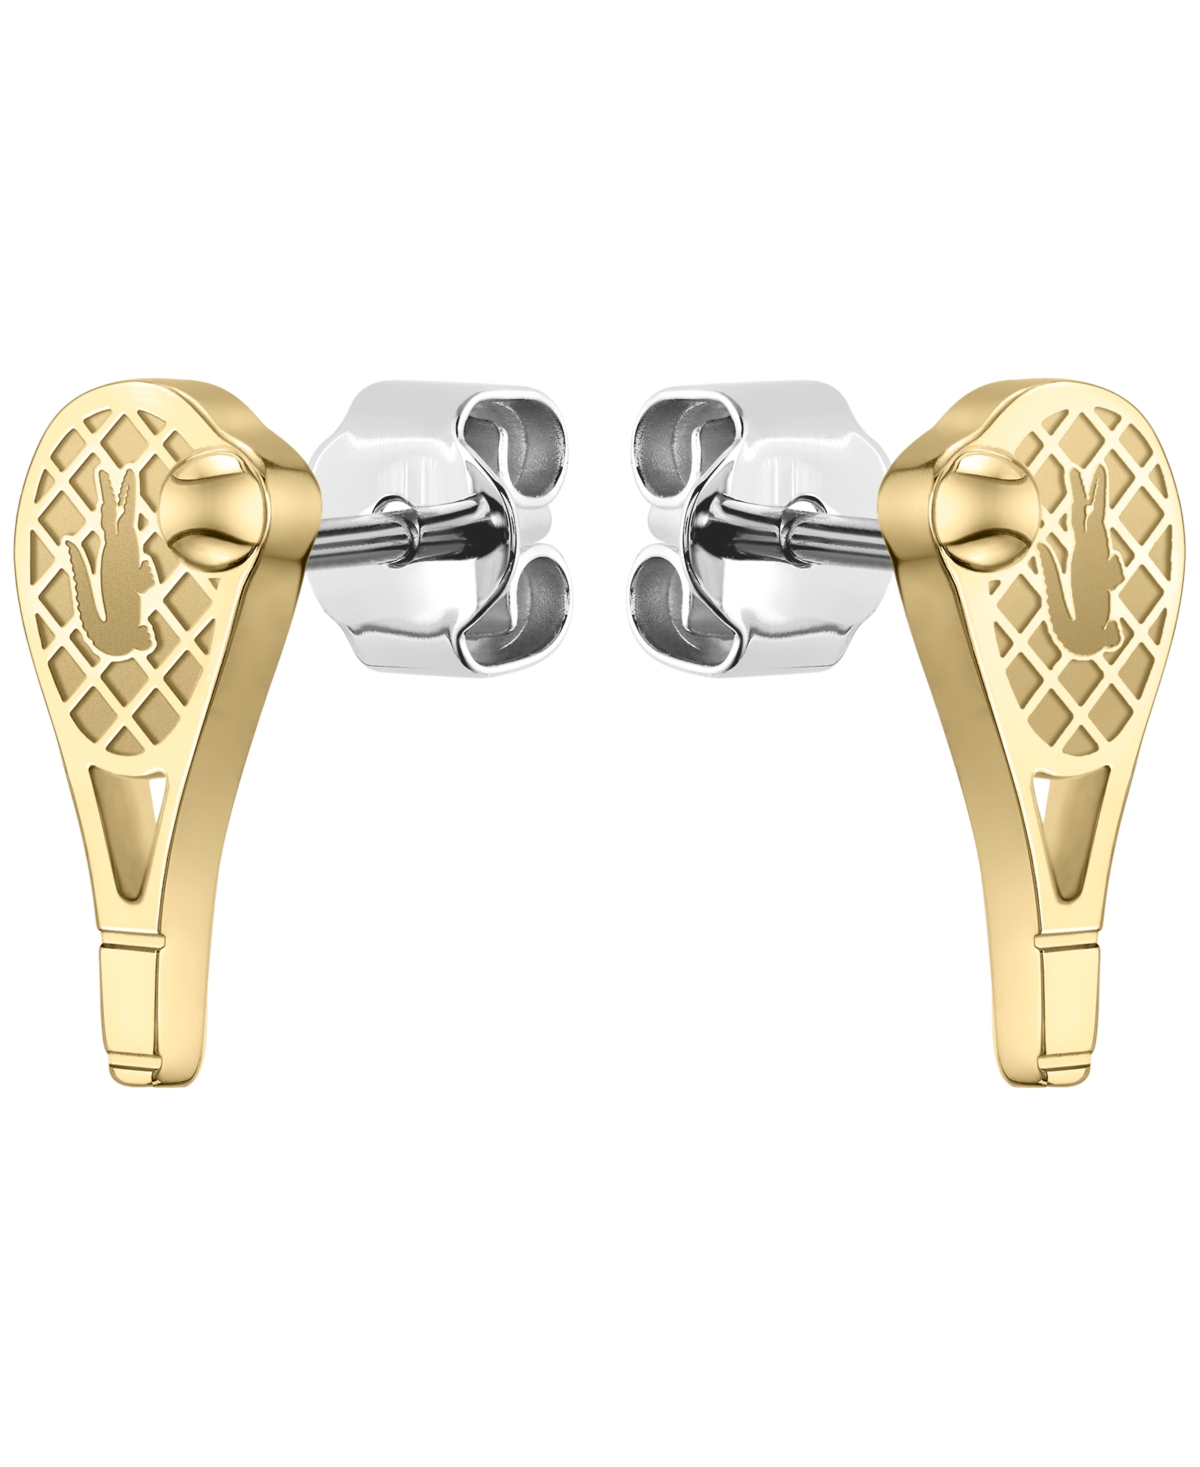 Lacoste Gold Tone Tennis Racket Earrings